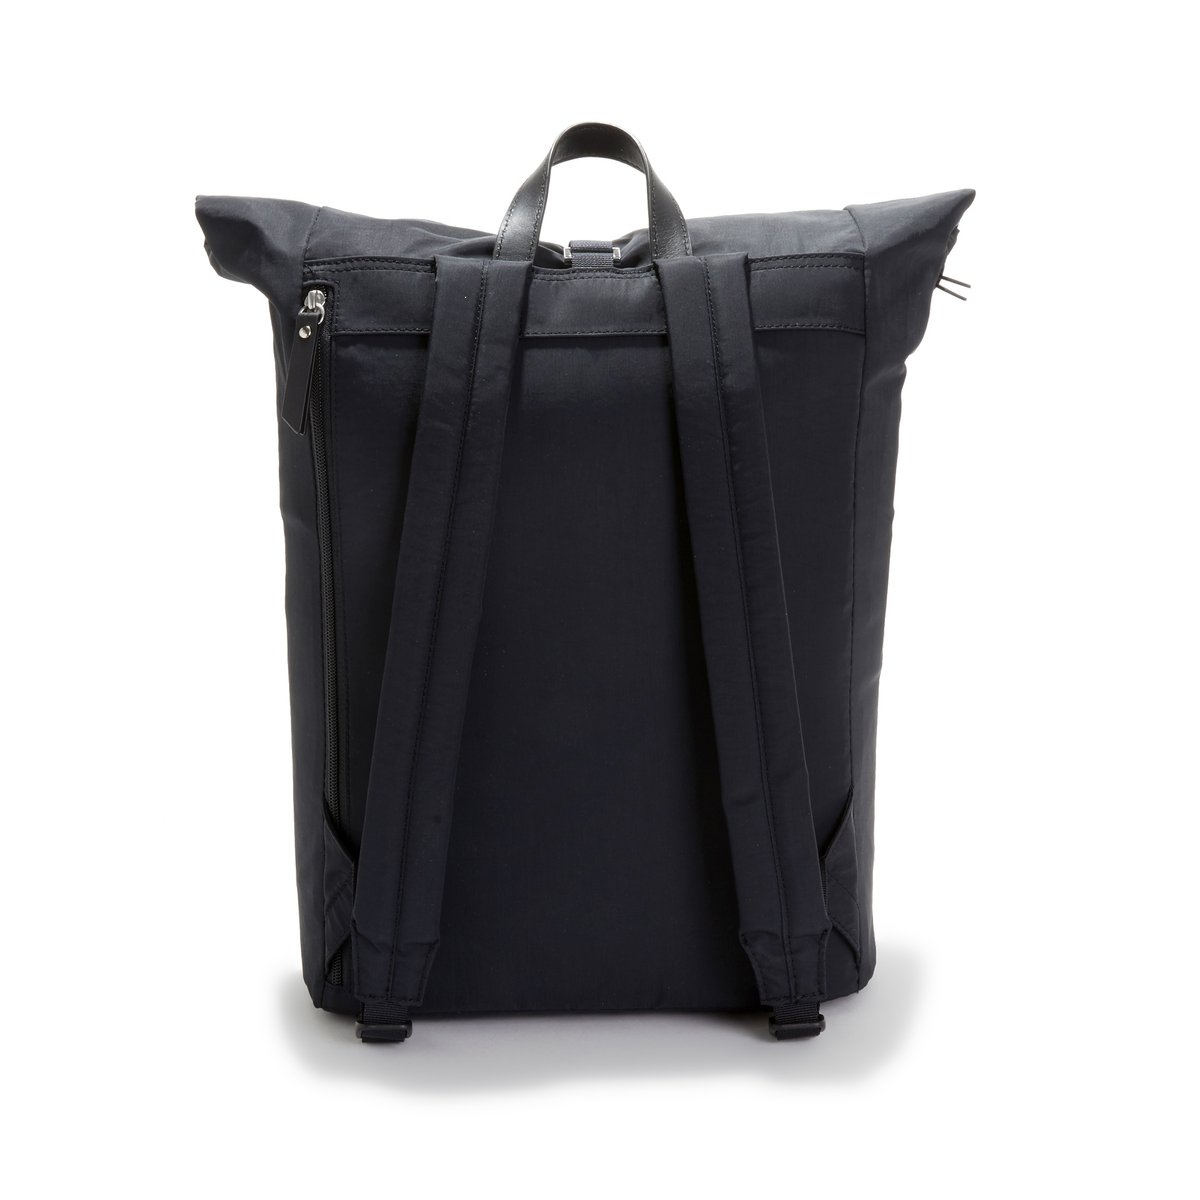 Рюкзак La Redoute л специально для ноутбука SIV единый размер черный - фото 4